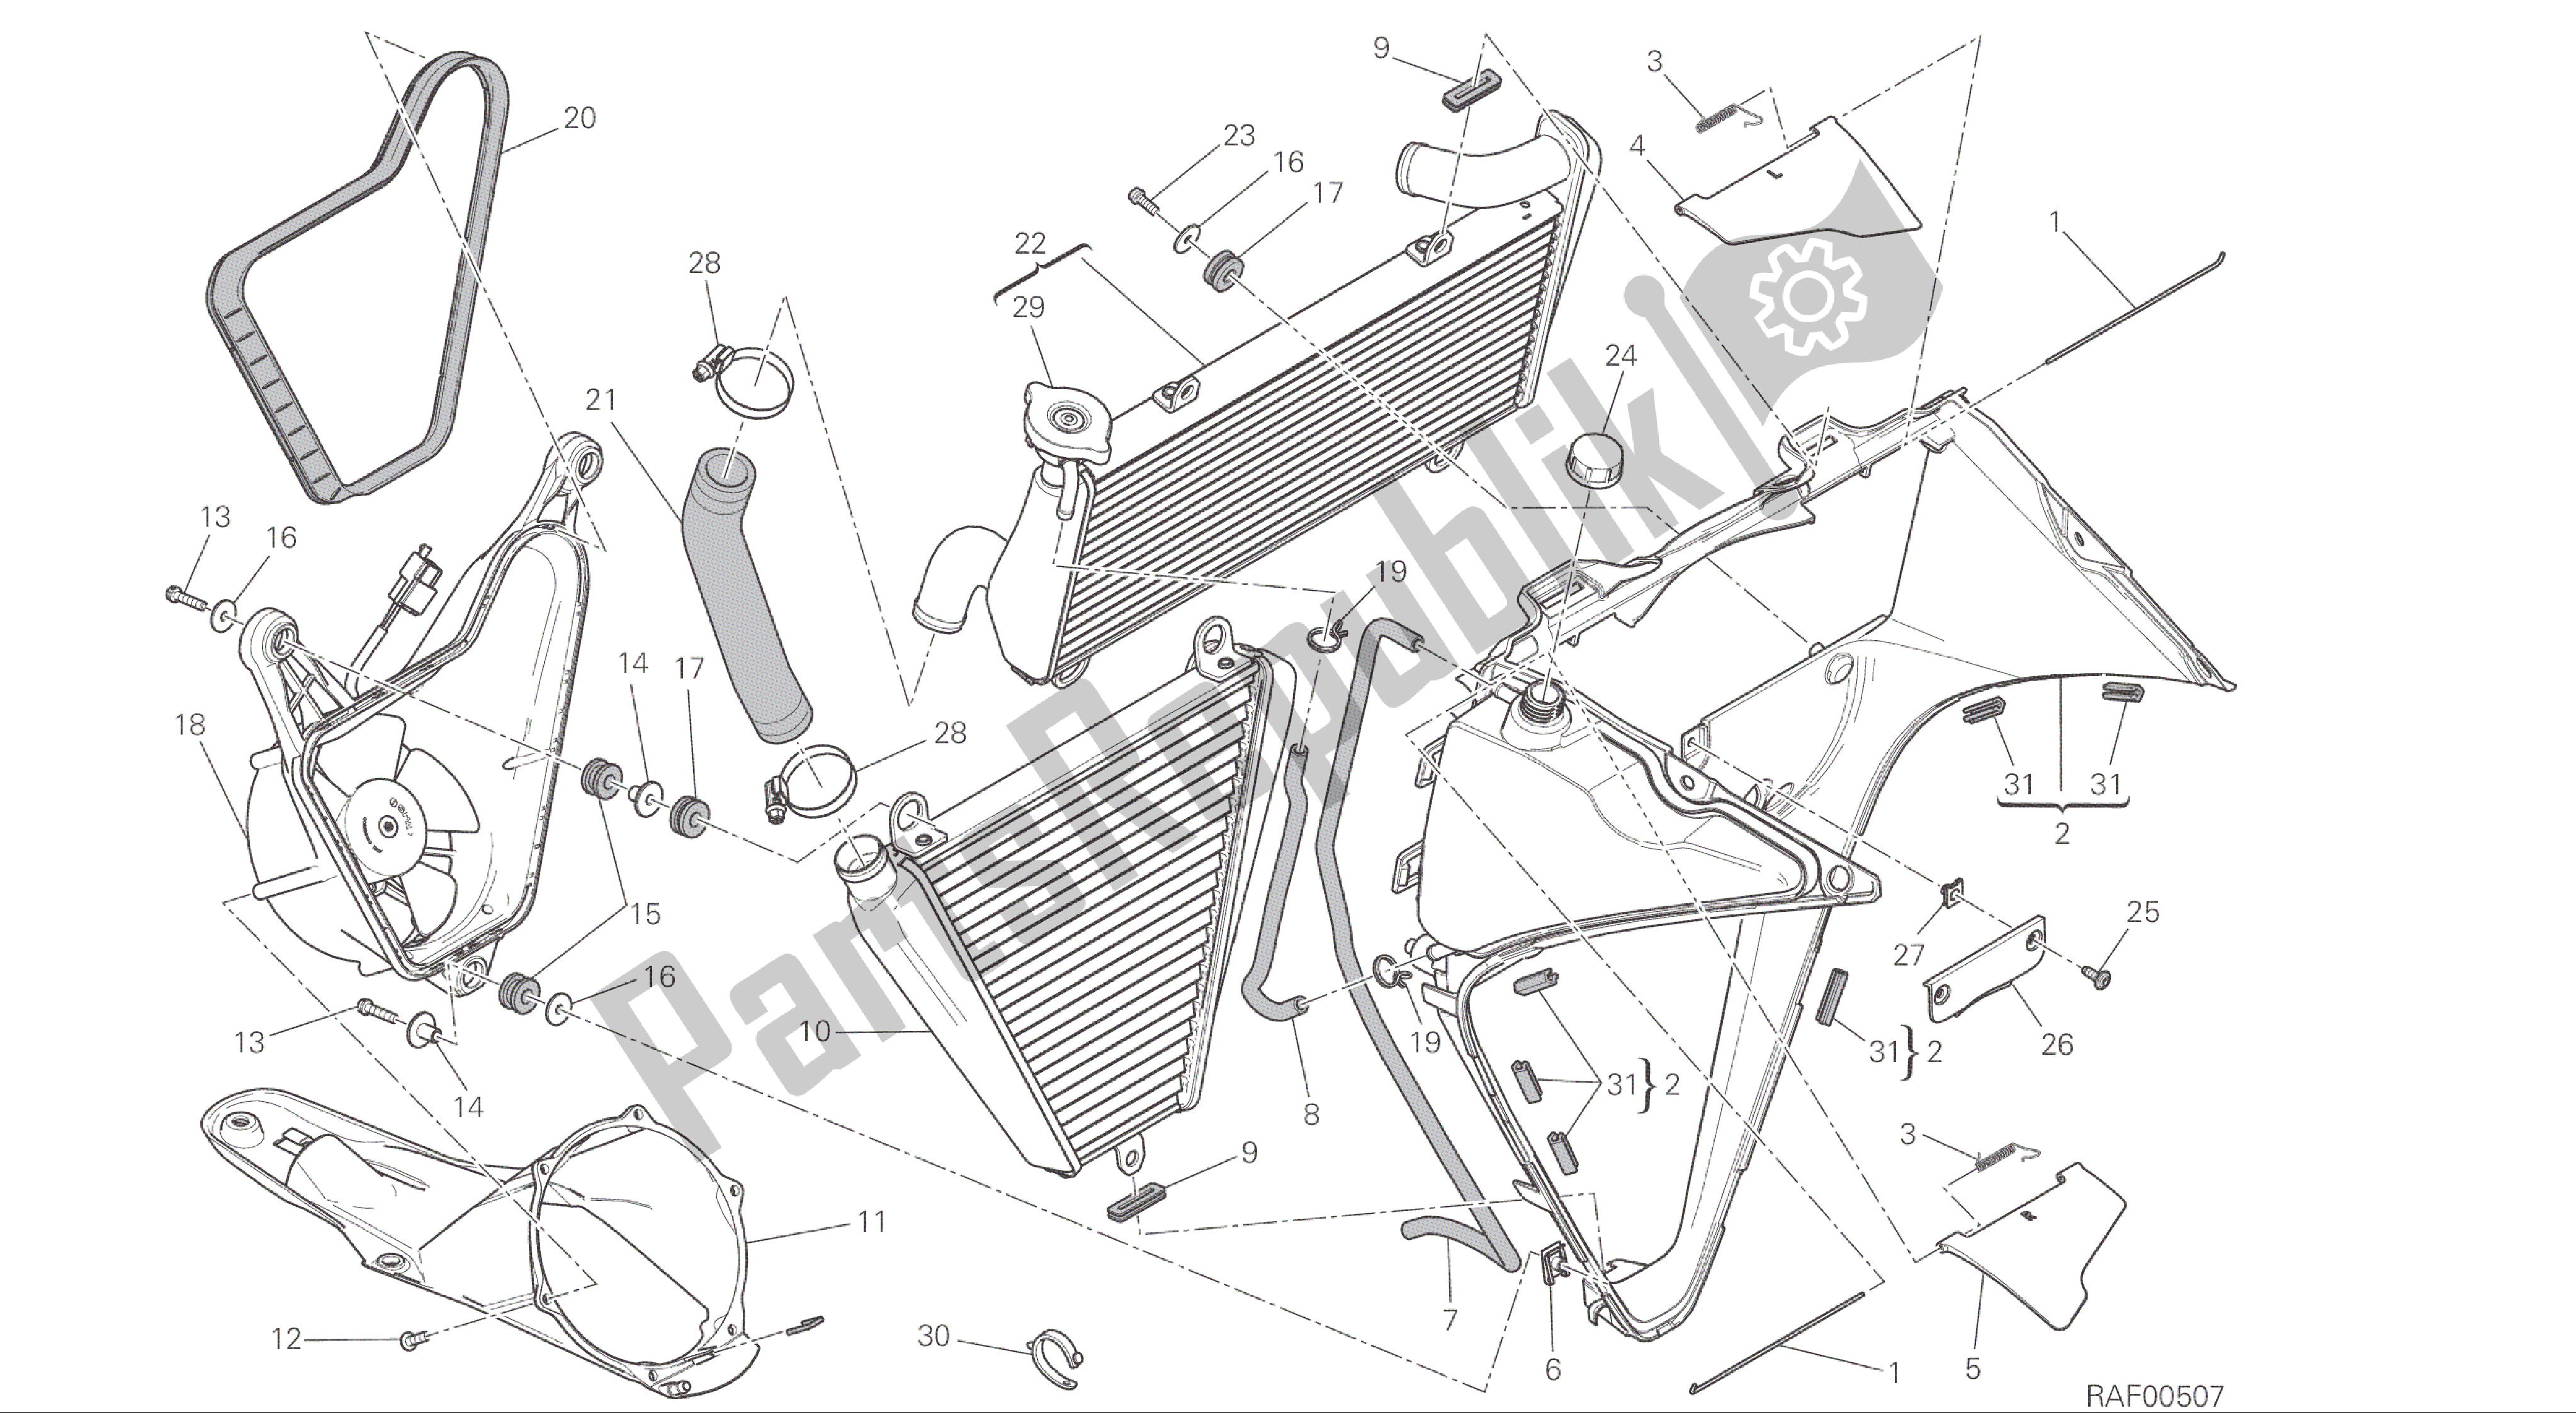 Toutes les pièces pour le Dessin 030 - Refroidisseur D'eau [mod: 1299; Xst: Aus, Eur, Fra, Jap, Twn] Cadre De Groupe du Ducati Panigale ABS 1299 2016